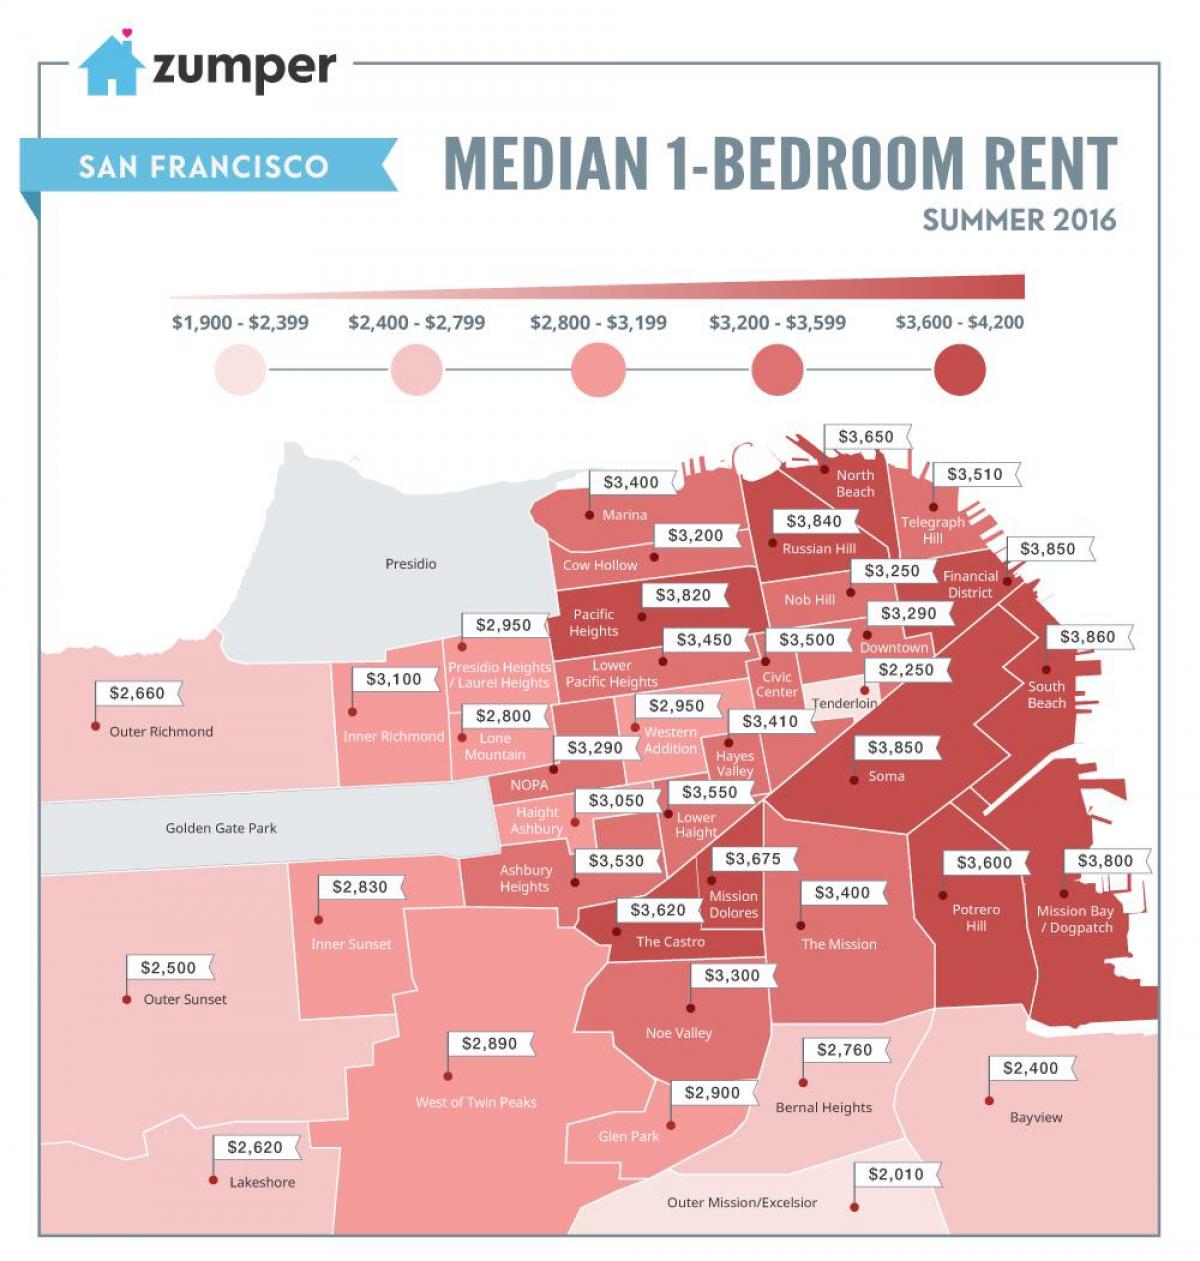 San Francisco prezos de aluguer mapa